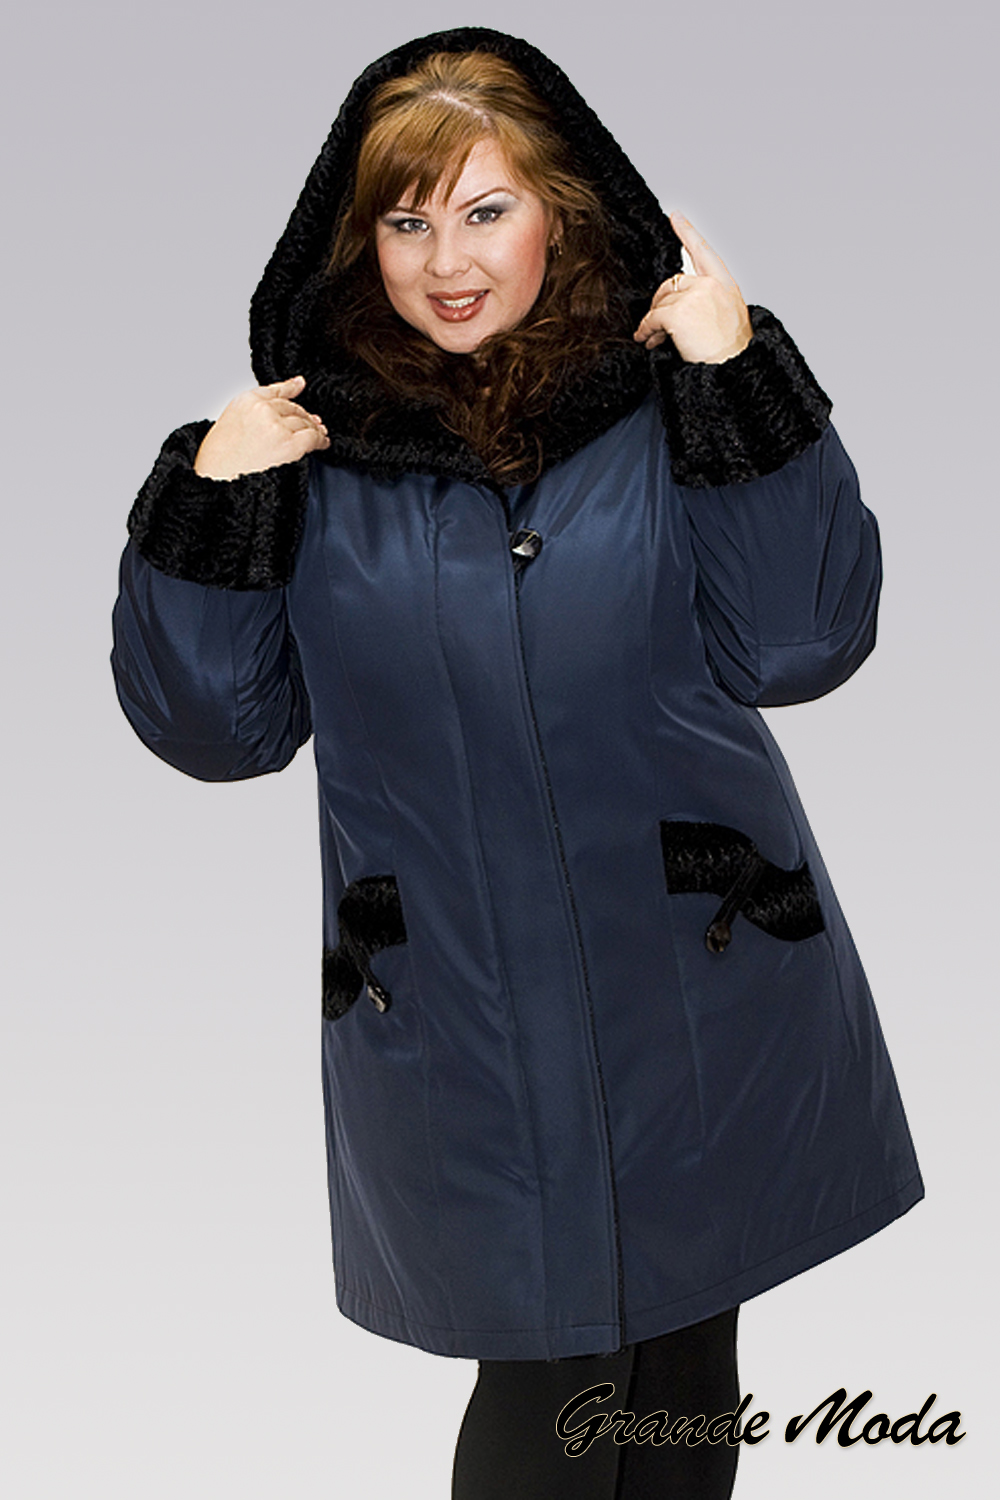 Полных интернет магазин россия. Зимняя куртка женская валберис 60 размер. Куртки женские зимние 64 размер на валберис. Зимняя куртка женская валберис 62 размер. Куртки для полных женщин.